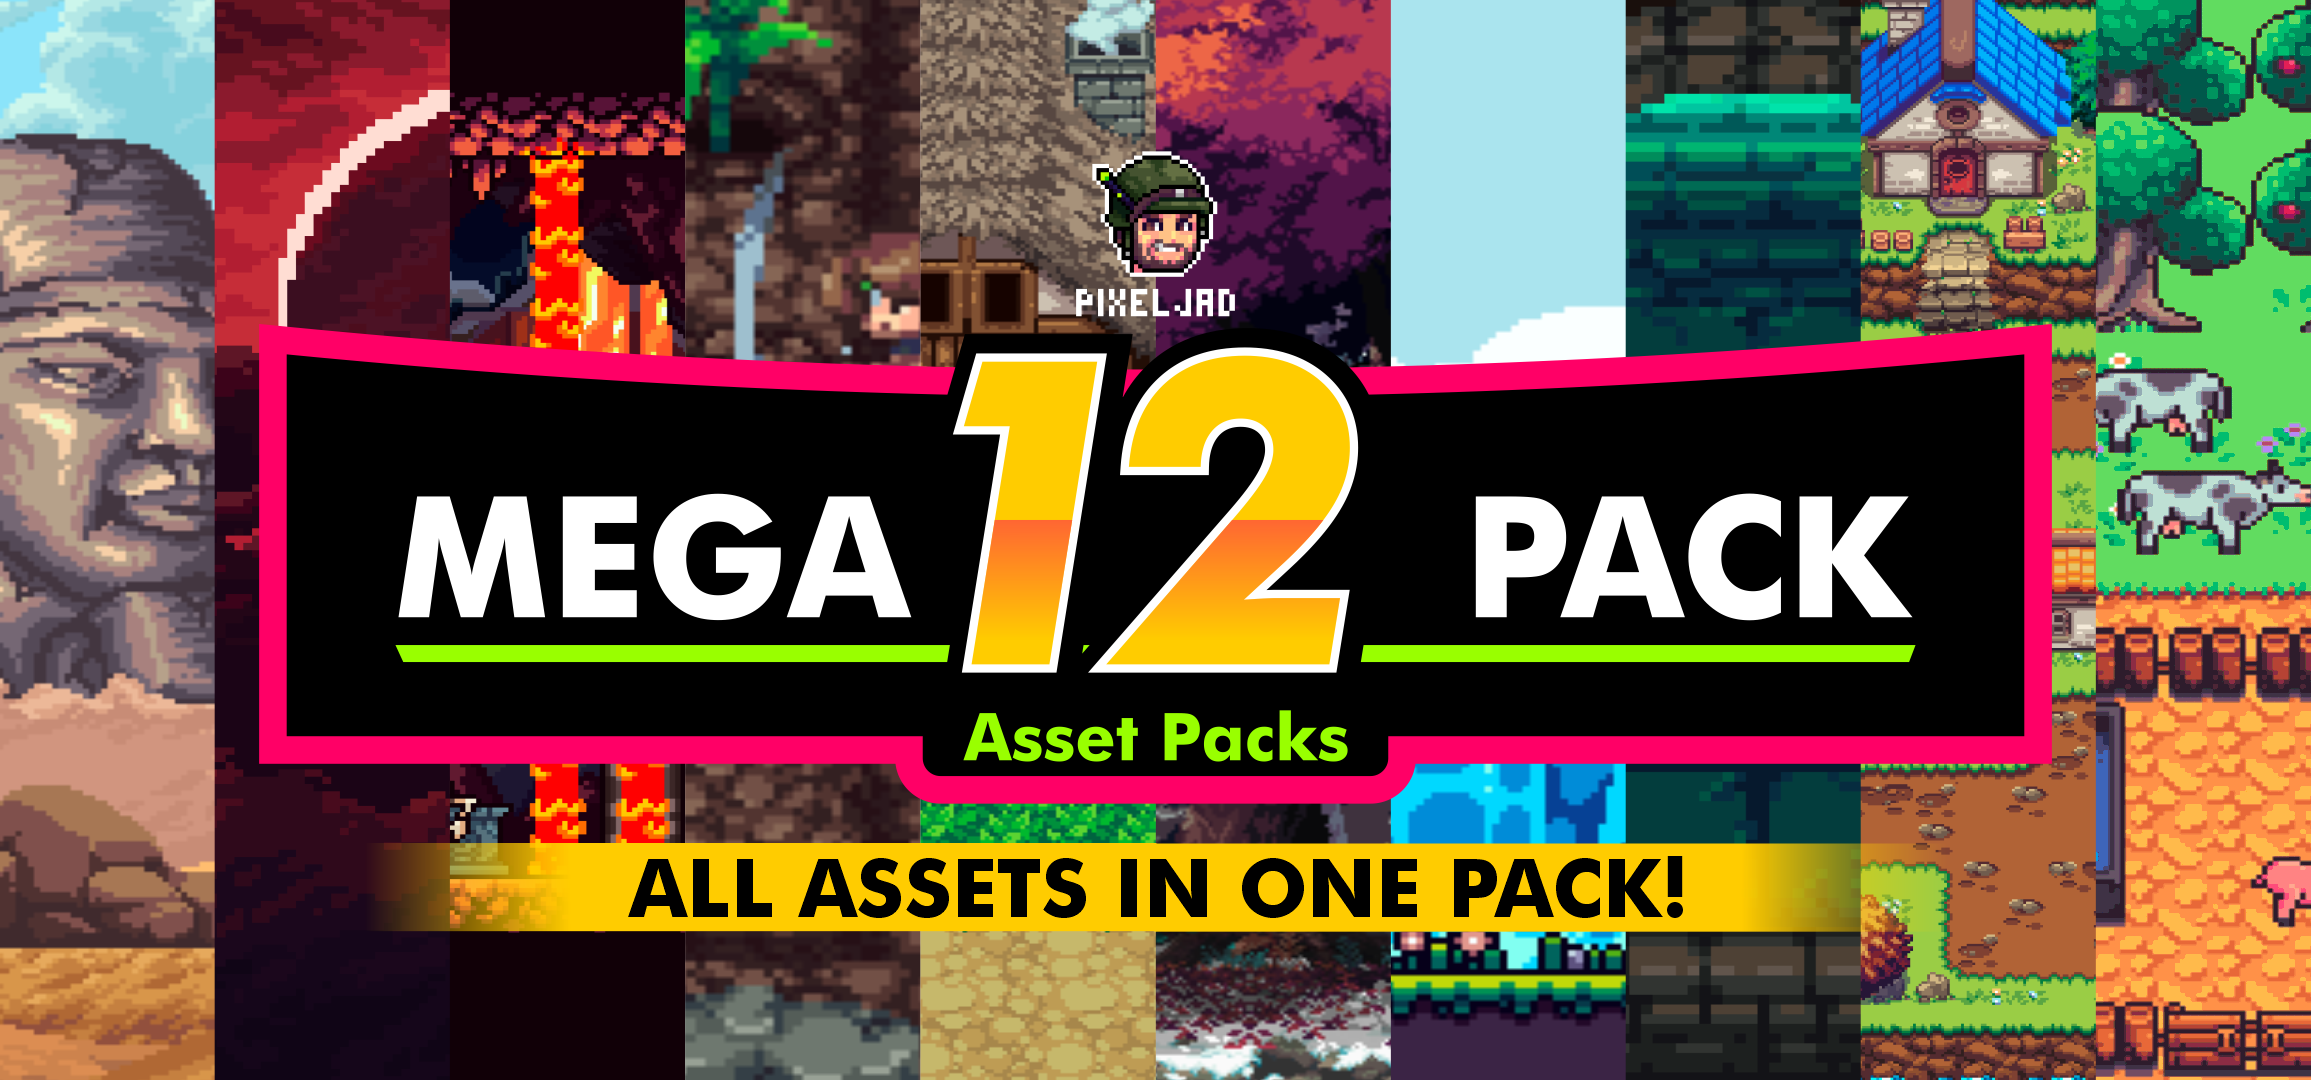 MEGA 12 PACK - (12 Complete Assets)